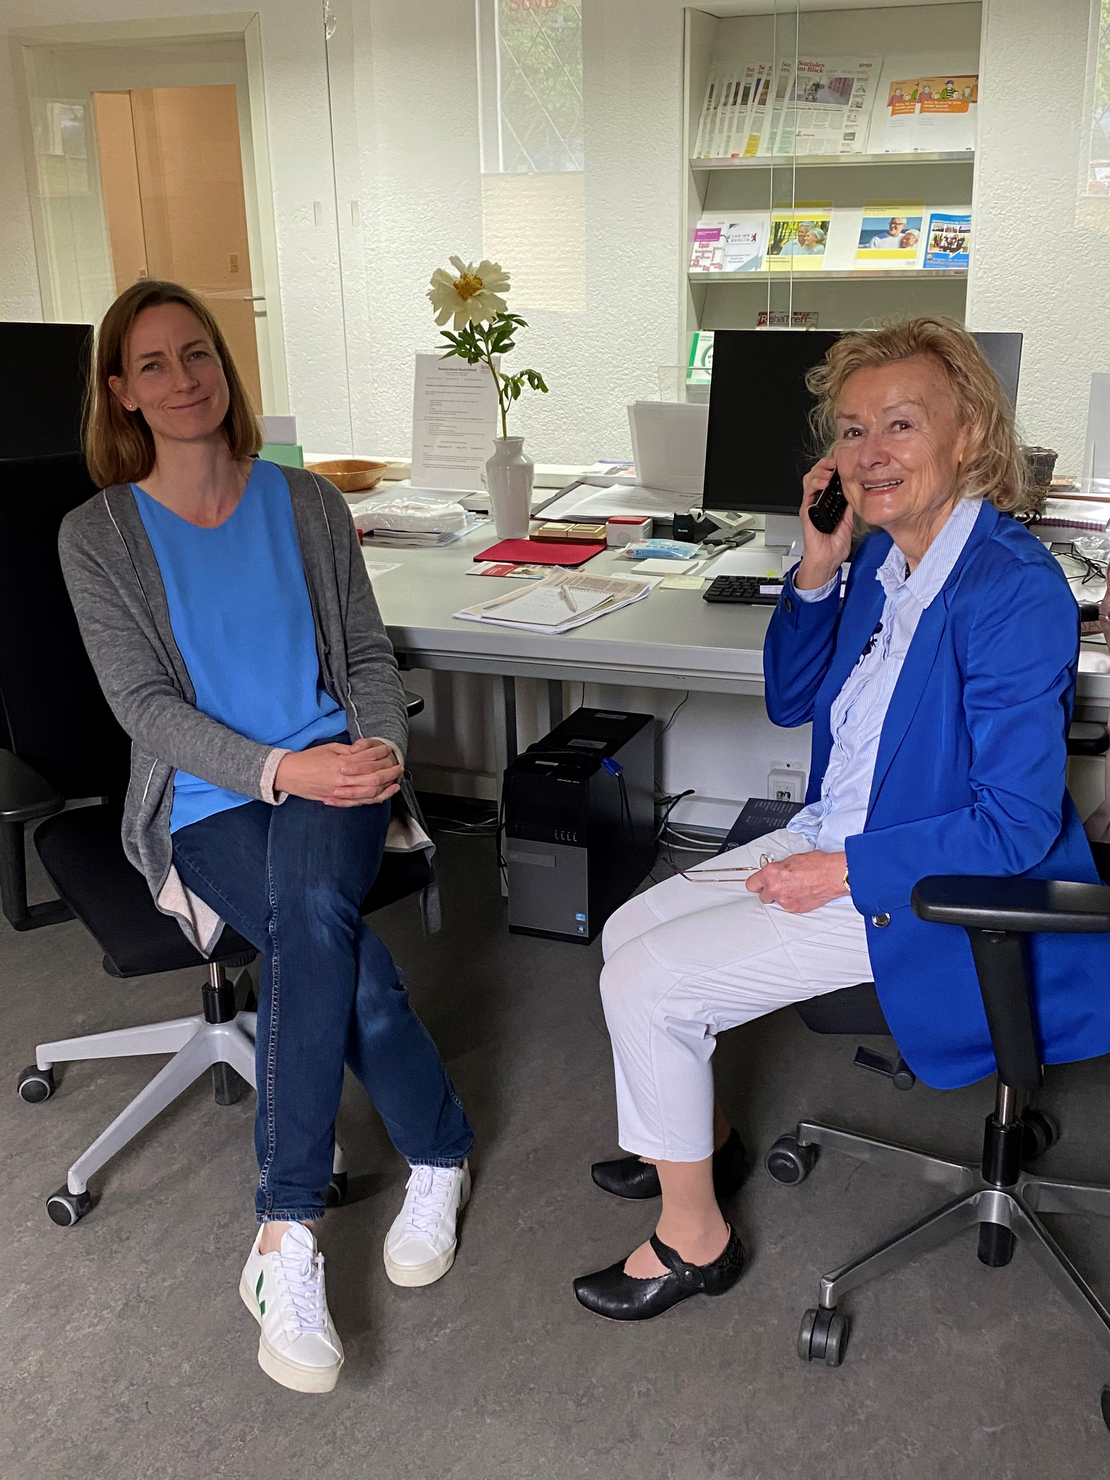 SoVD Fachanwältin Carina Meißner und die Landesvorsitzende Ursula Engelen-Kefer bei der Telefonaktion